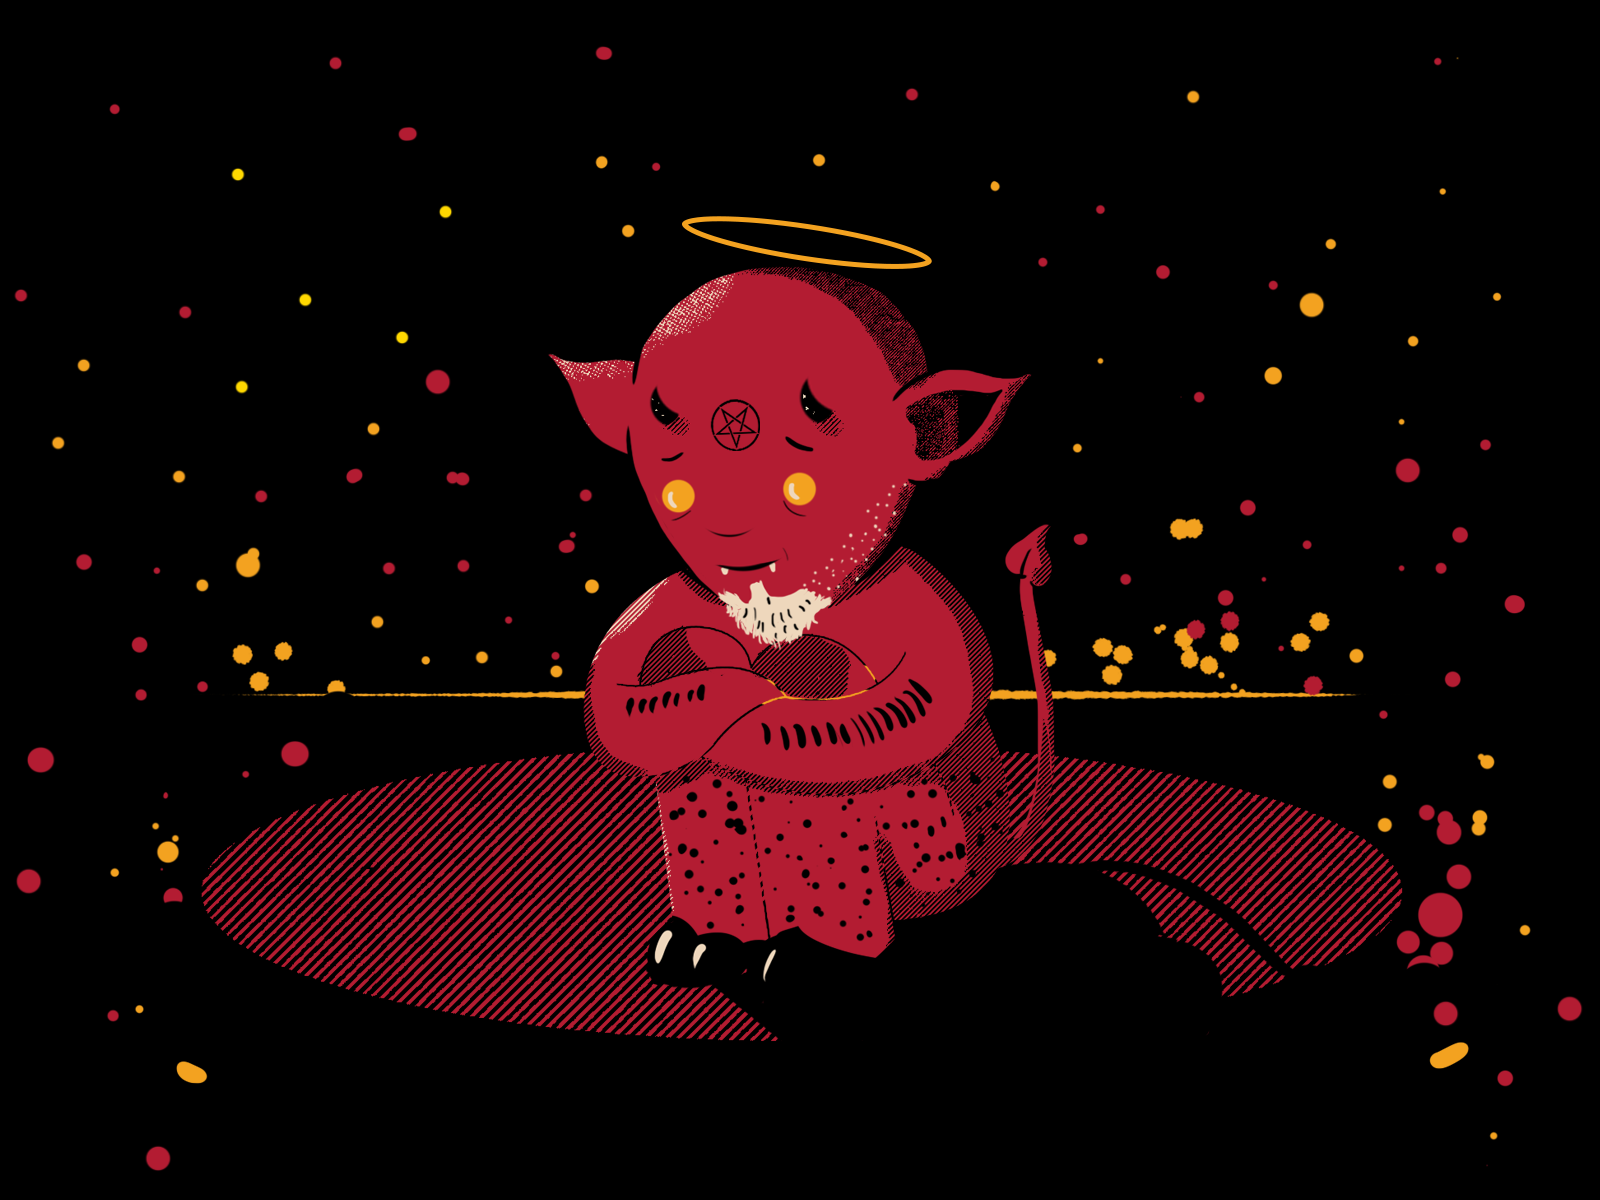 Sad Devil by Dany Herrera on Dribbble